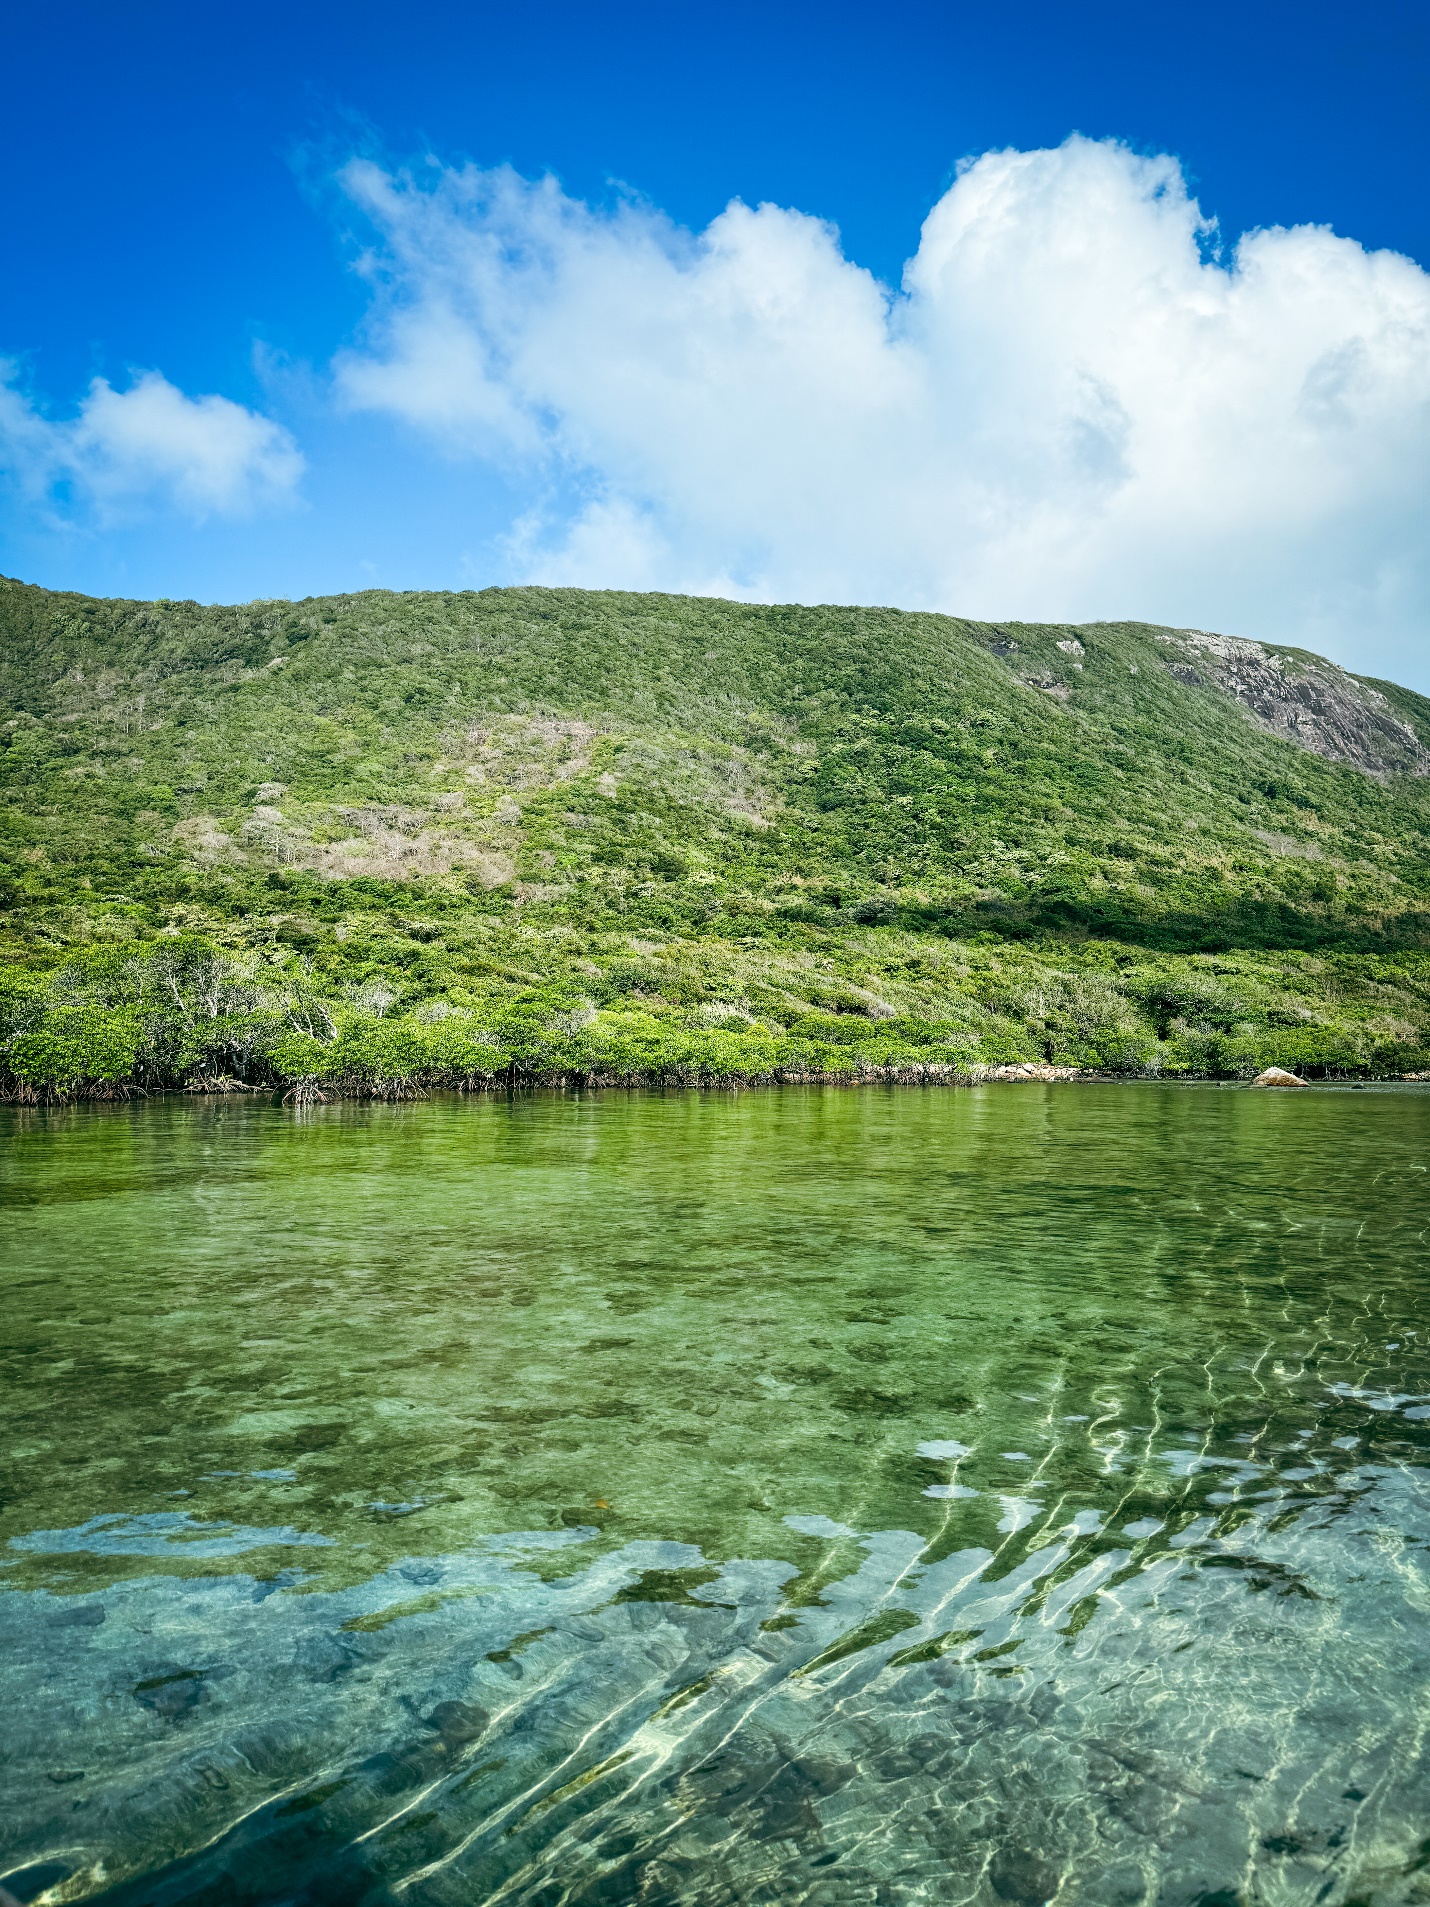 Dừng chân ở Côn Đảo, du khách ‘mê’ cách làm du lịch xanh - sạch - bền vững - 3